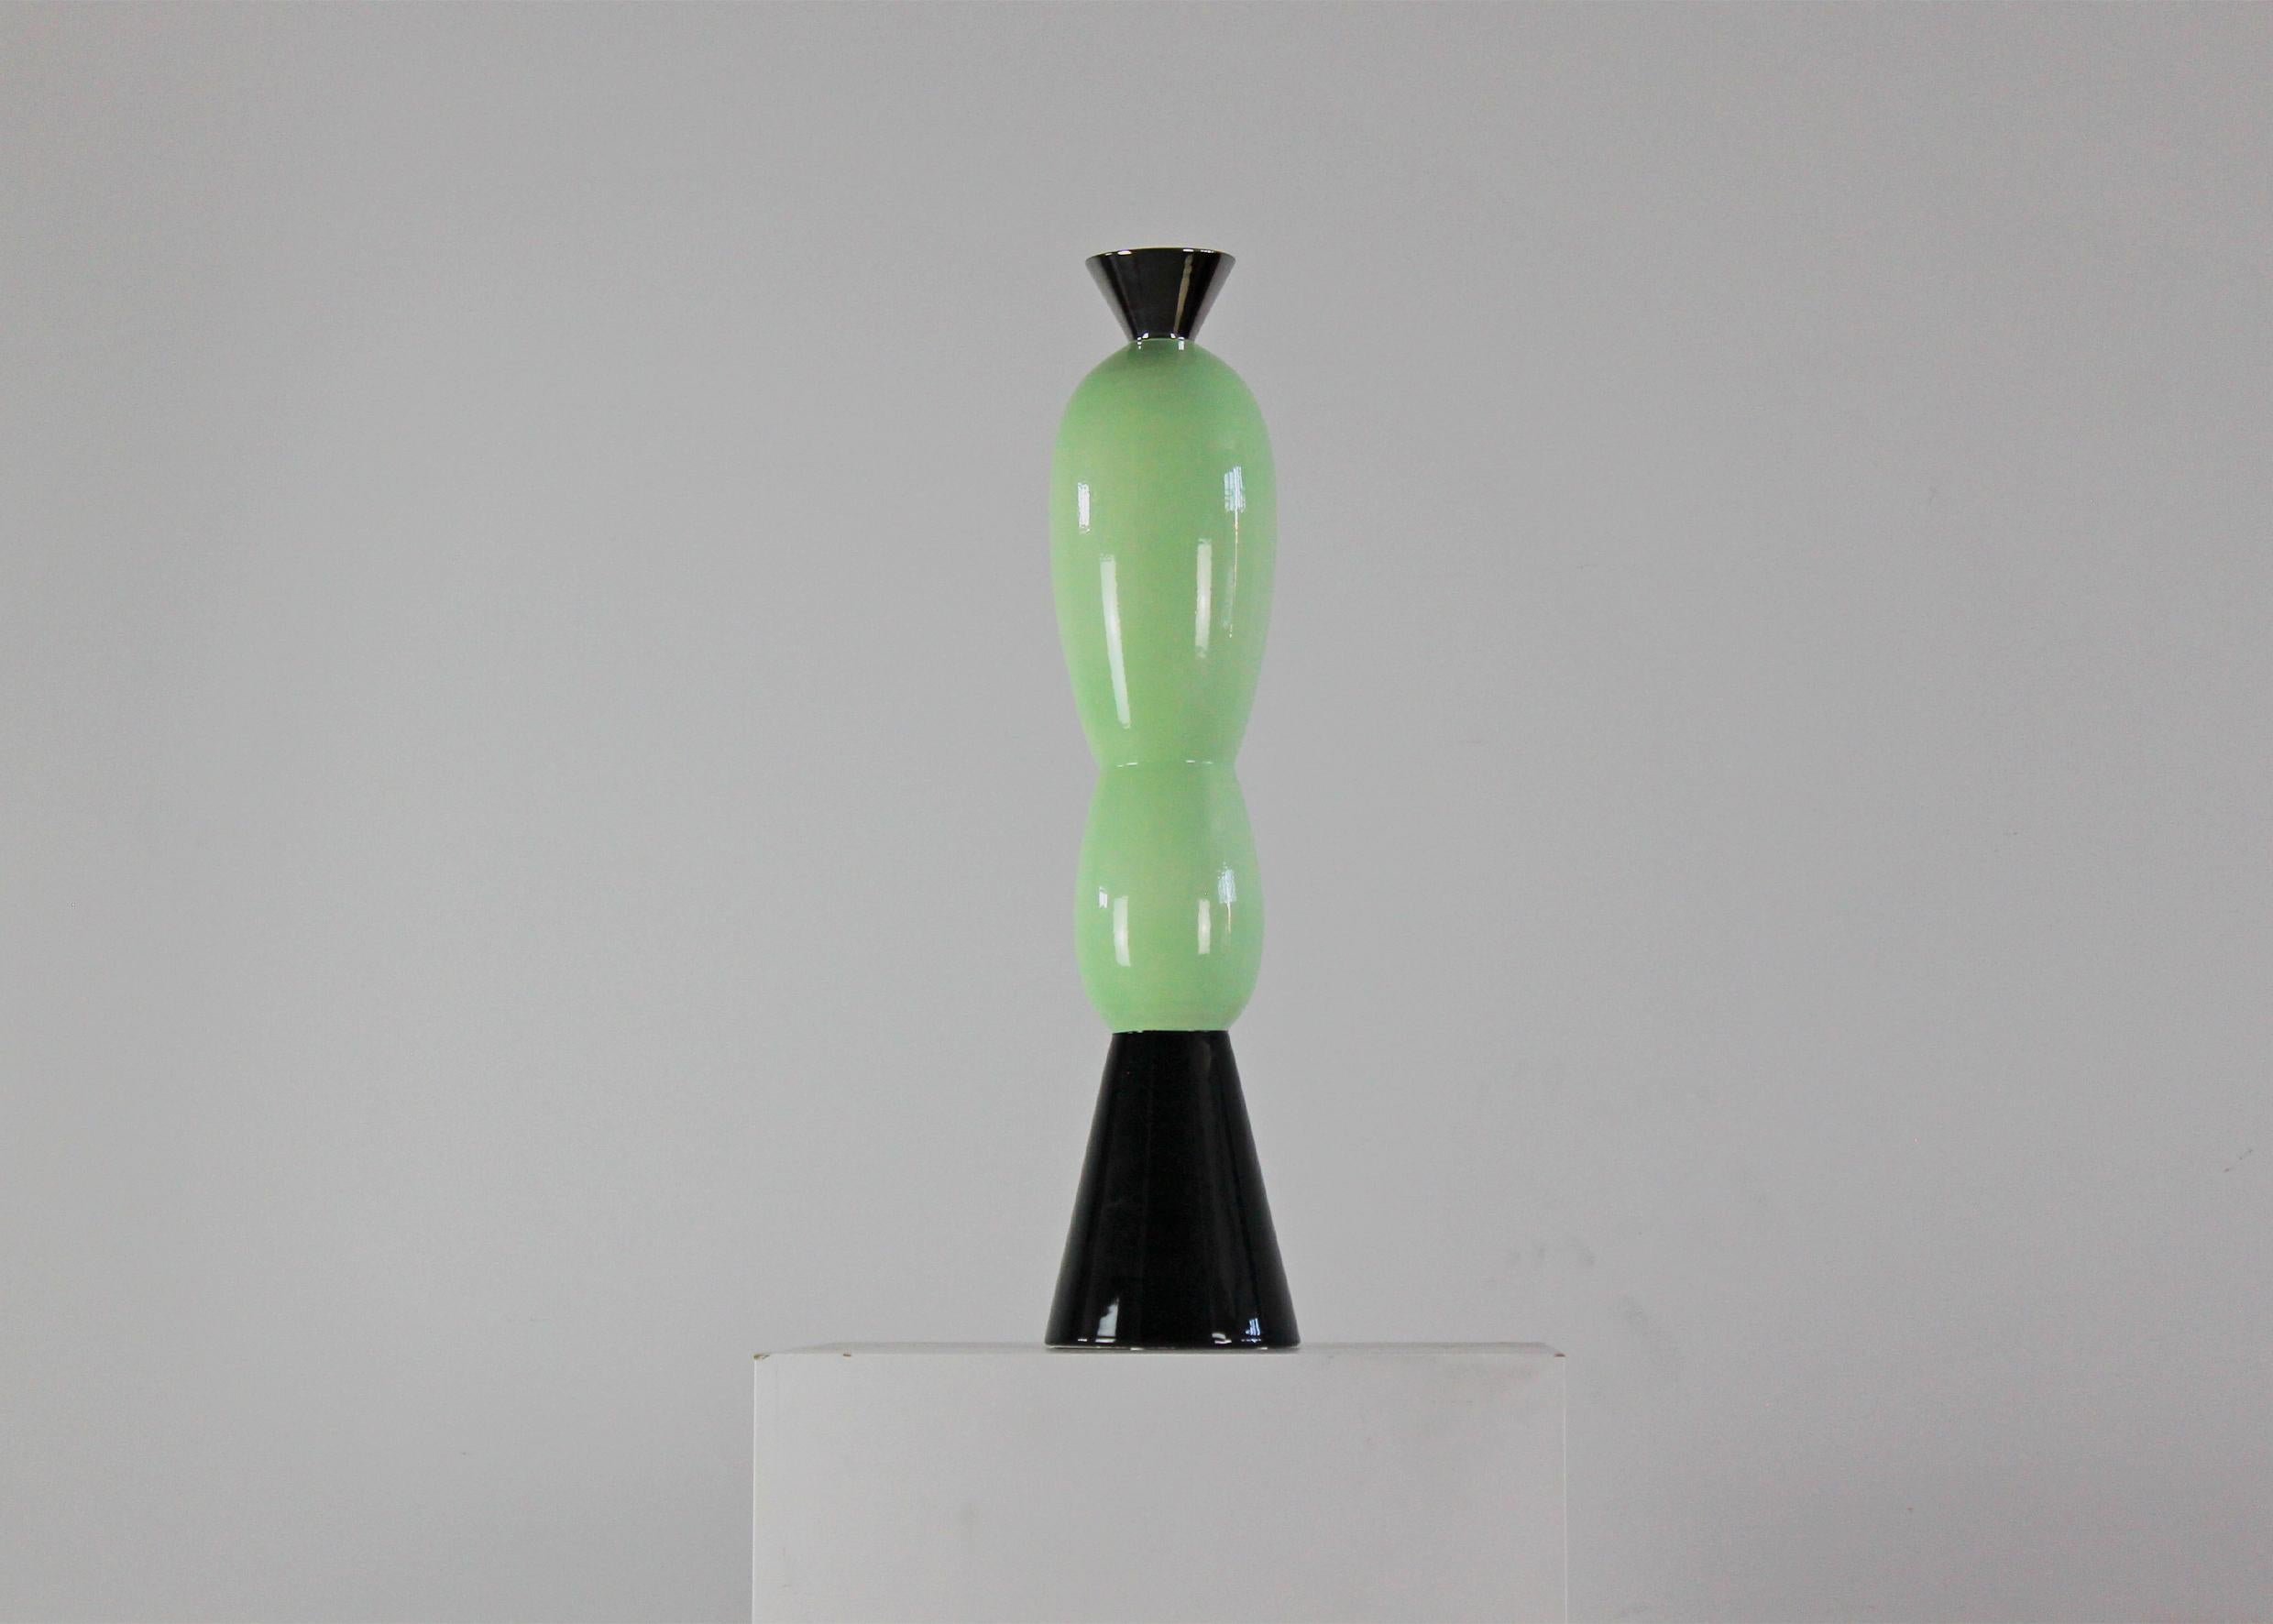 Vollständig aus Keramik gefertigte Elgin-Statuette in limitierter Auflage aus der Serie 12 Columns, entworfen von Alessandro Mendini für Superego, 2008. 

Schwarz und Türkis verbinden sich zu einer raffinierten Silhouette, die an die Form einer